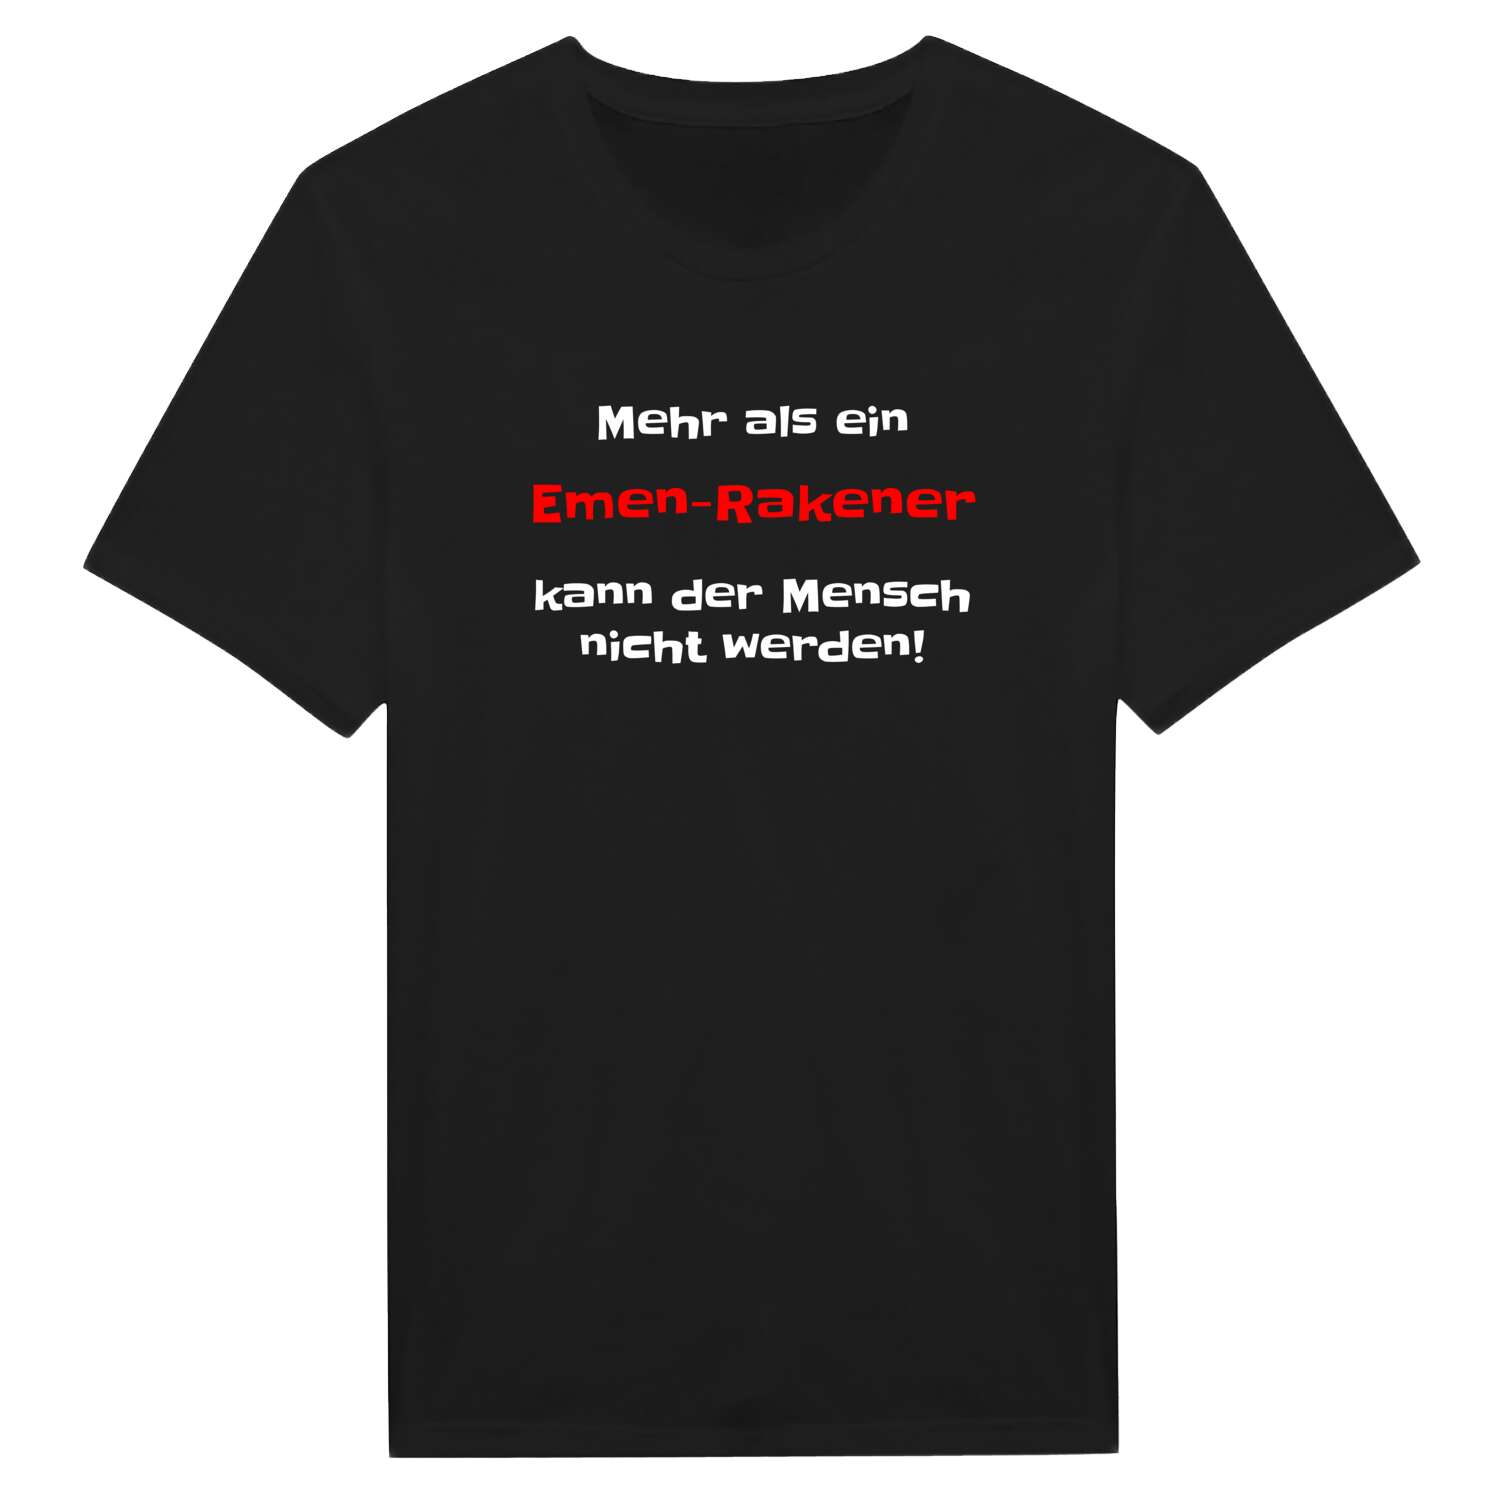 Emen-Raken T-Shirt »Mehr als ein«